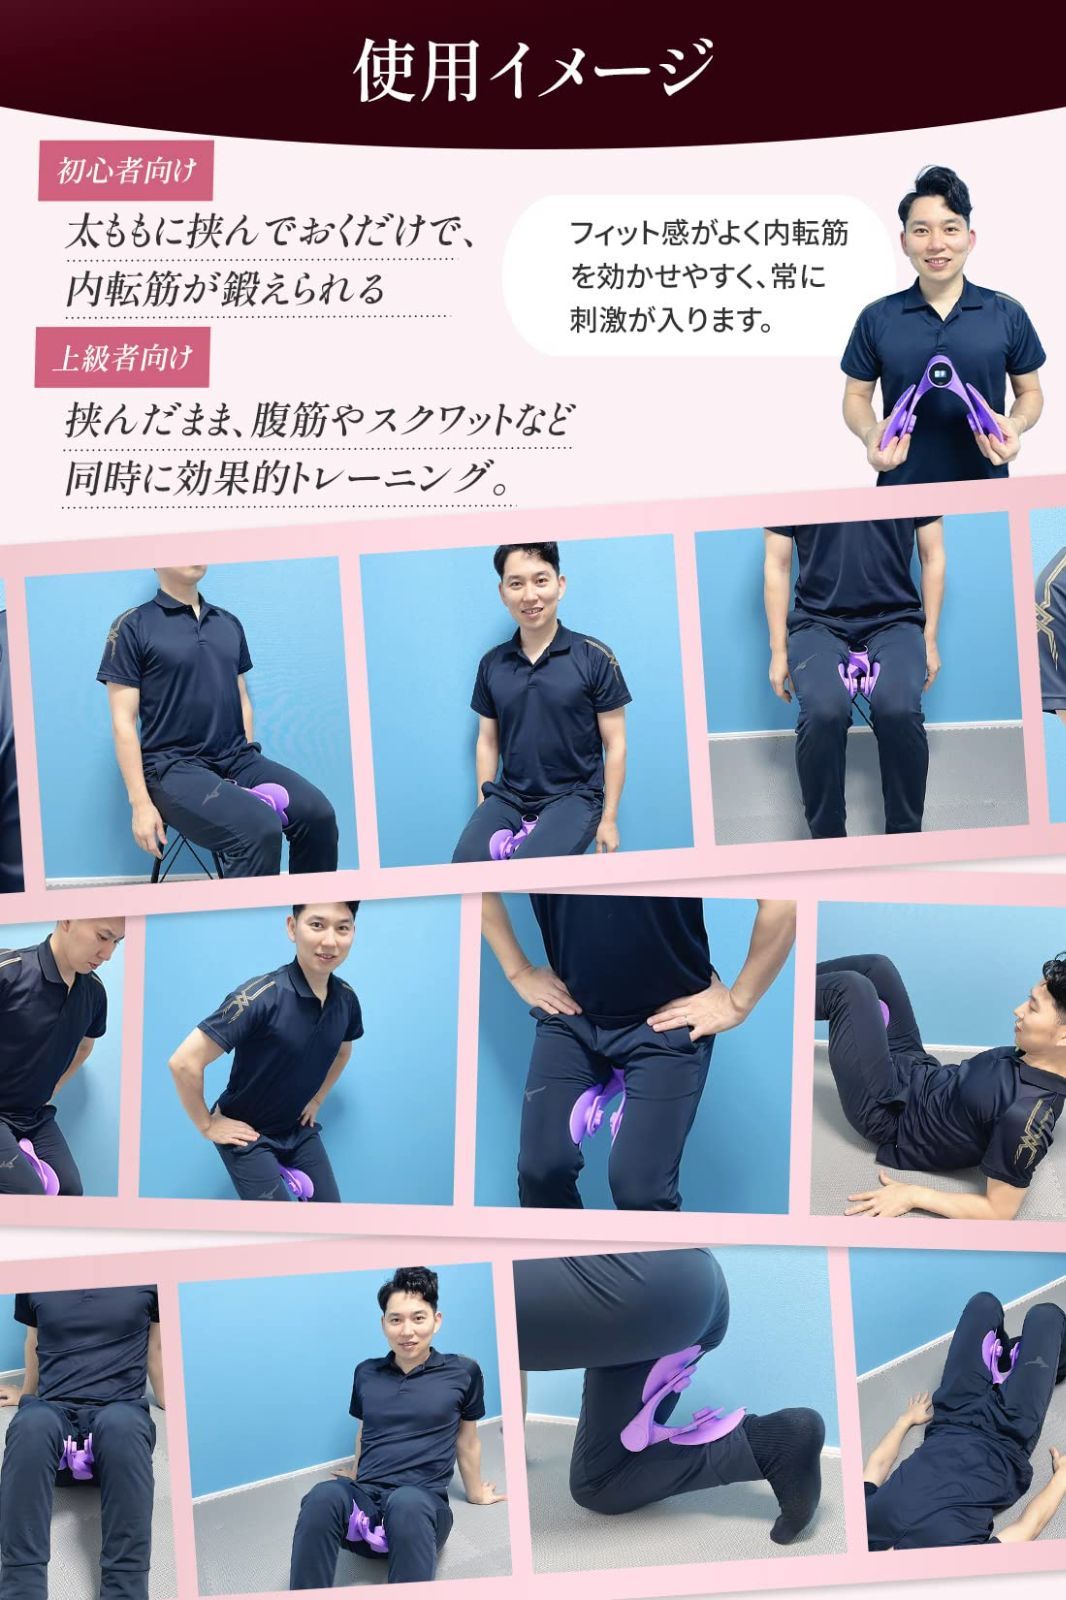 欲しいの 内転筋 骨盤底筋トレーニング器具 ダイエット器具 日本語説明